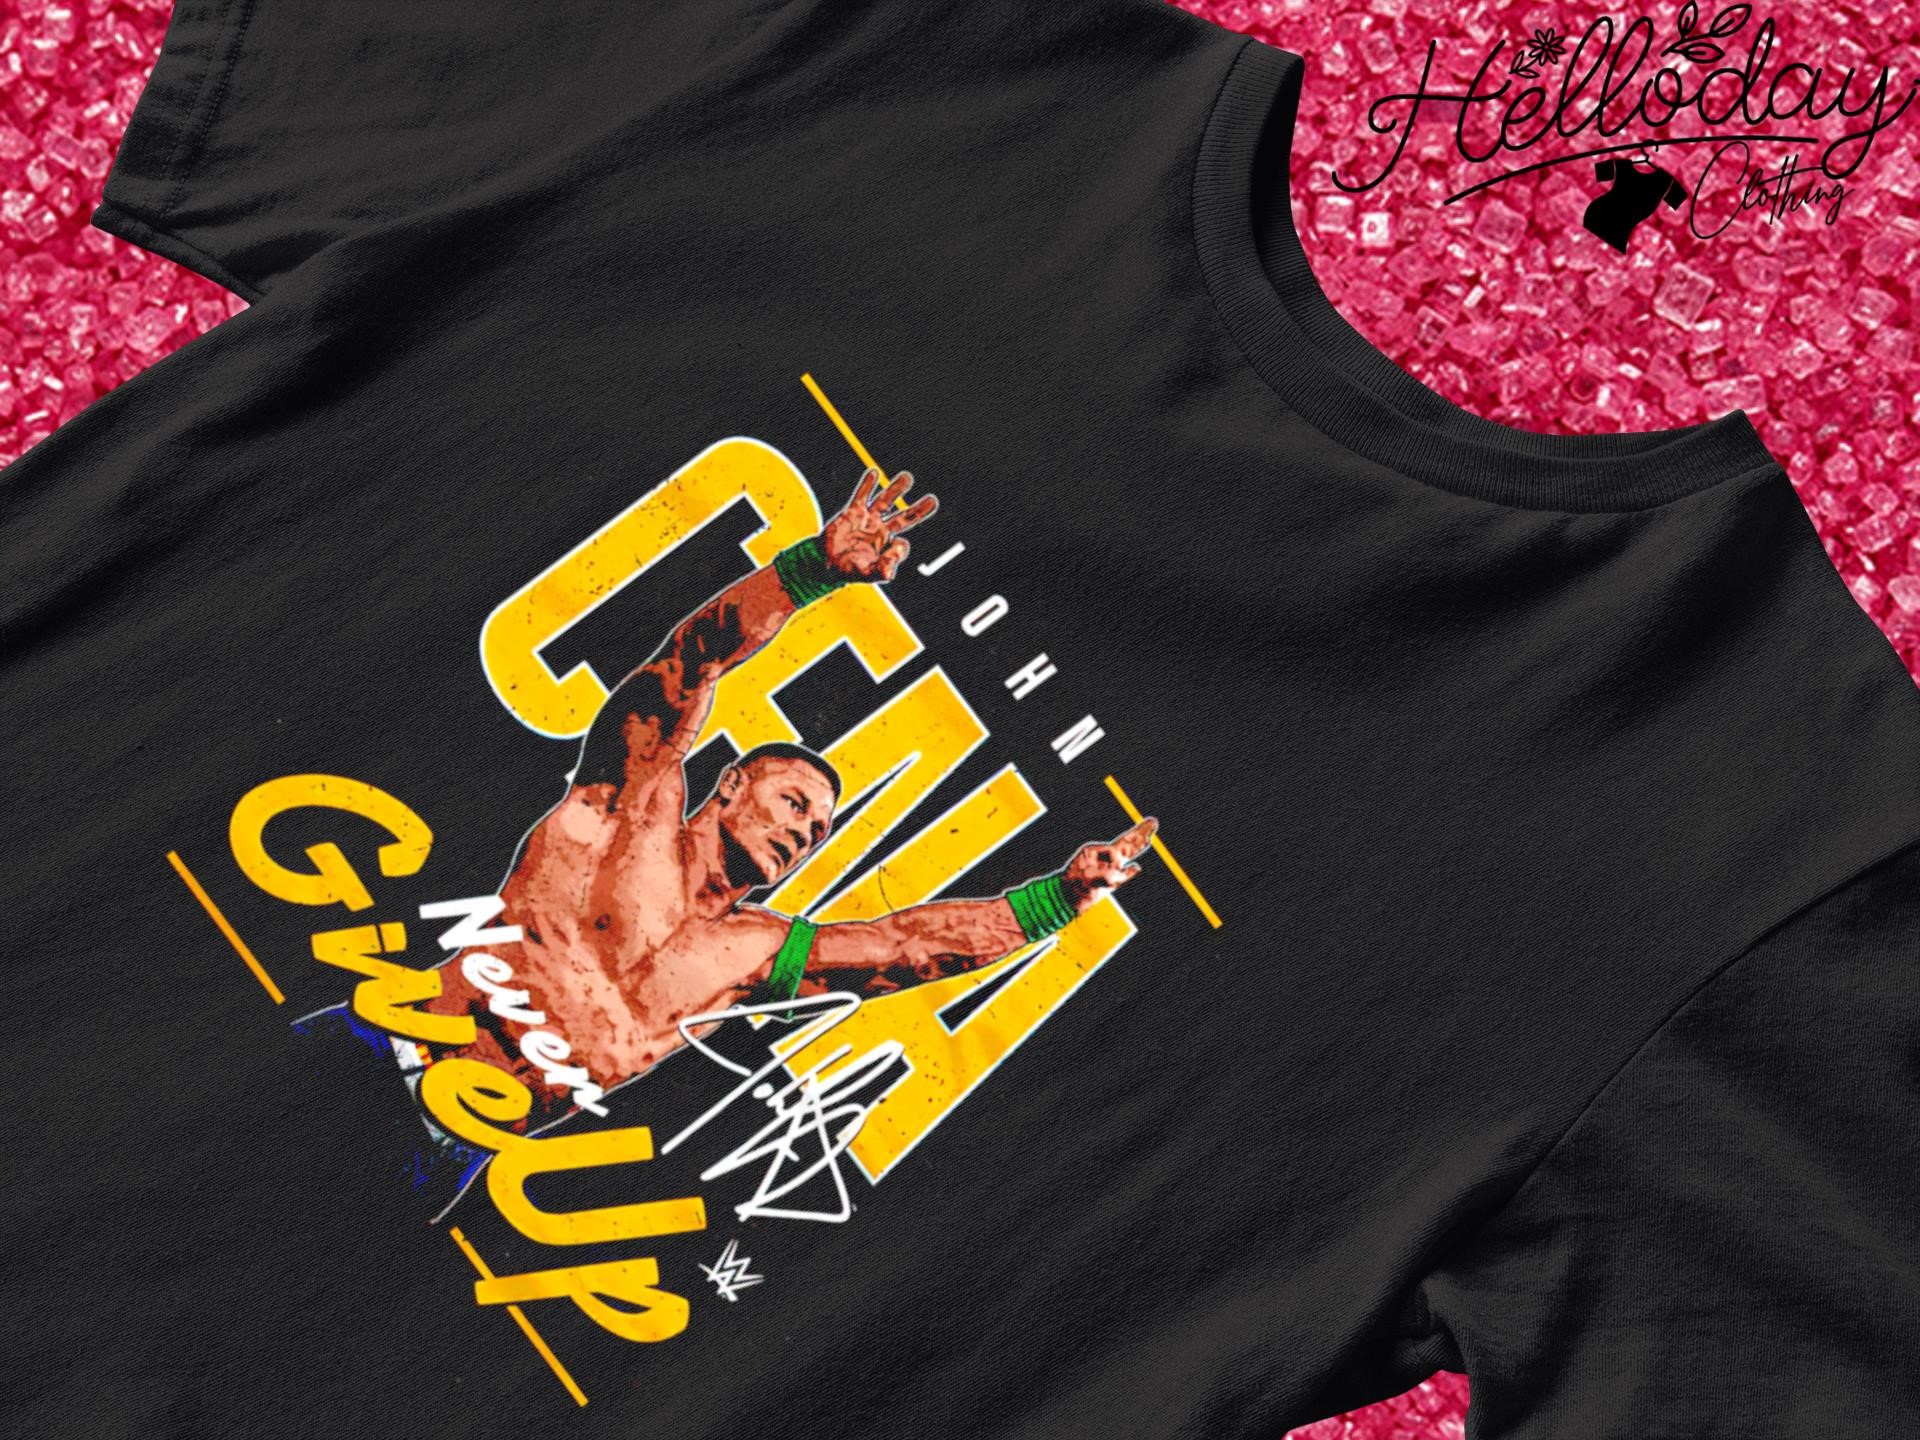 John Cena Never give up shirt